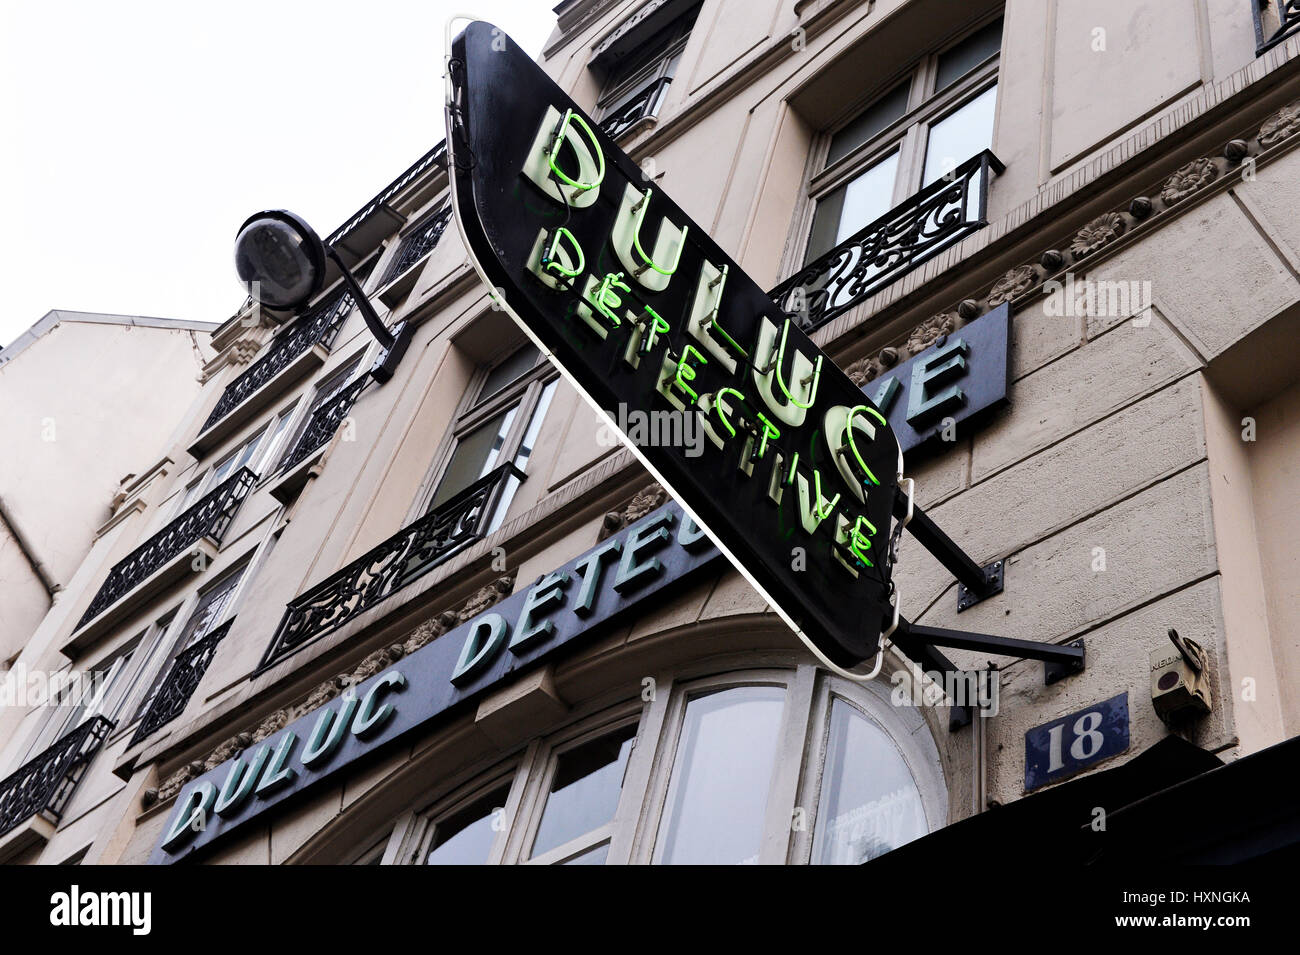 Agence de détectives privés Duluc, Paris, France Banque D'Images